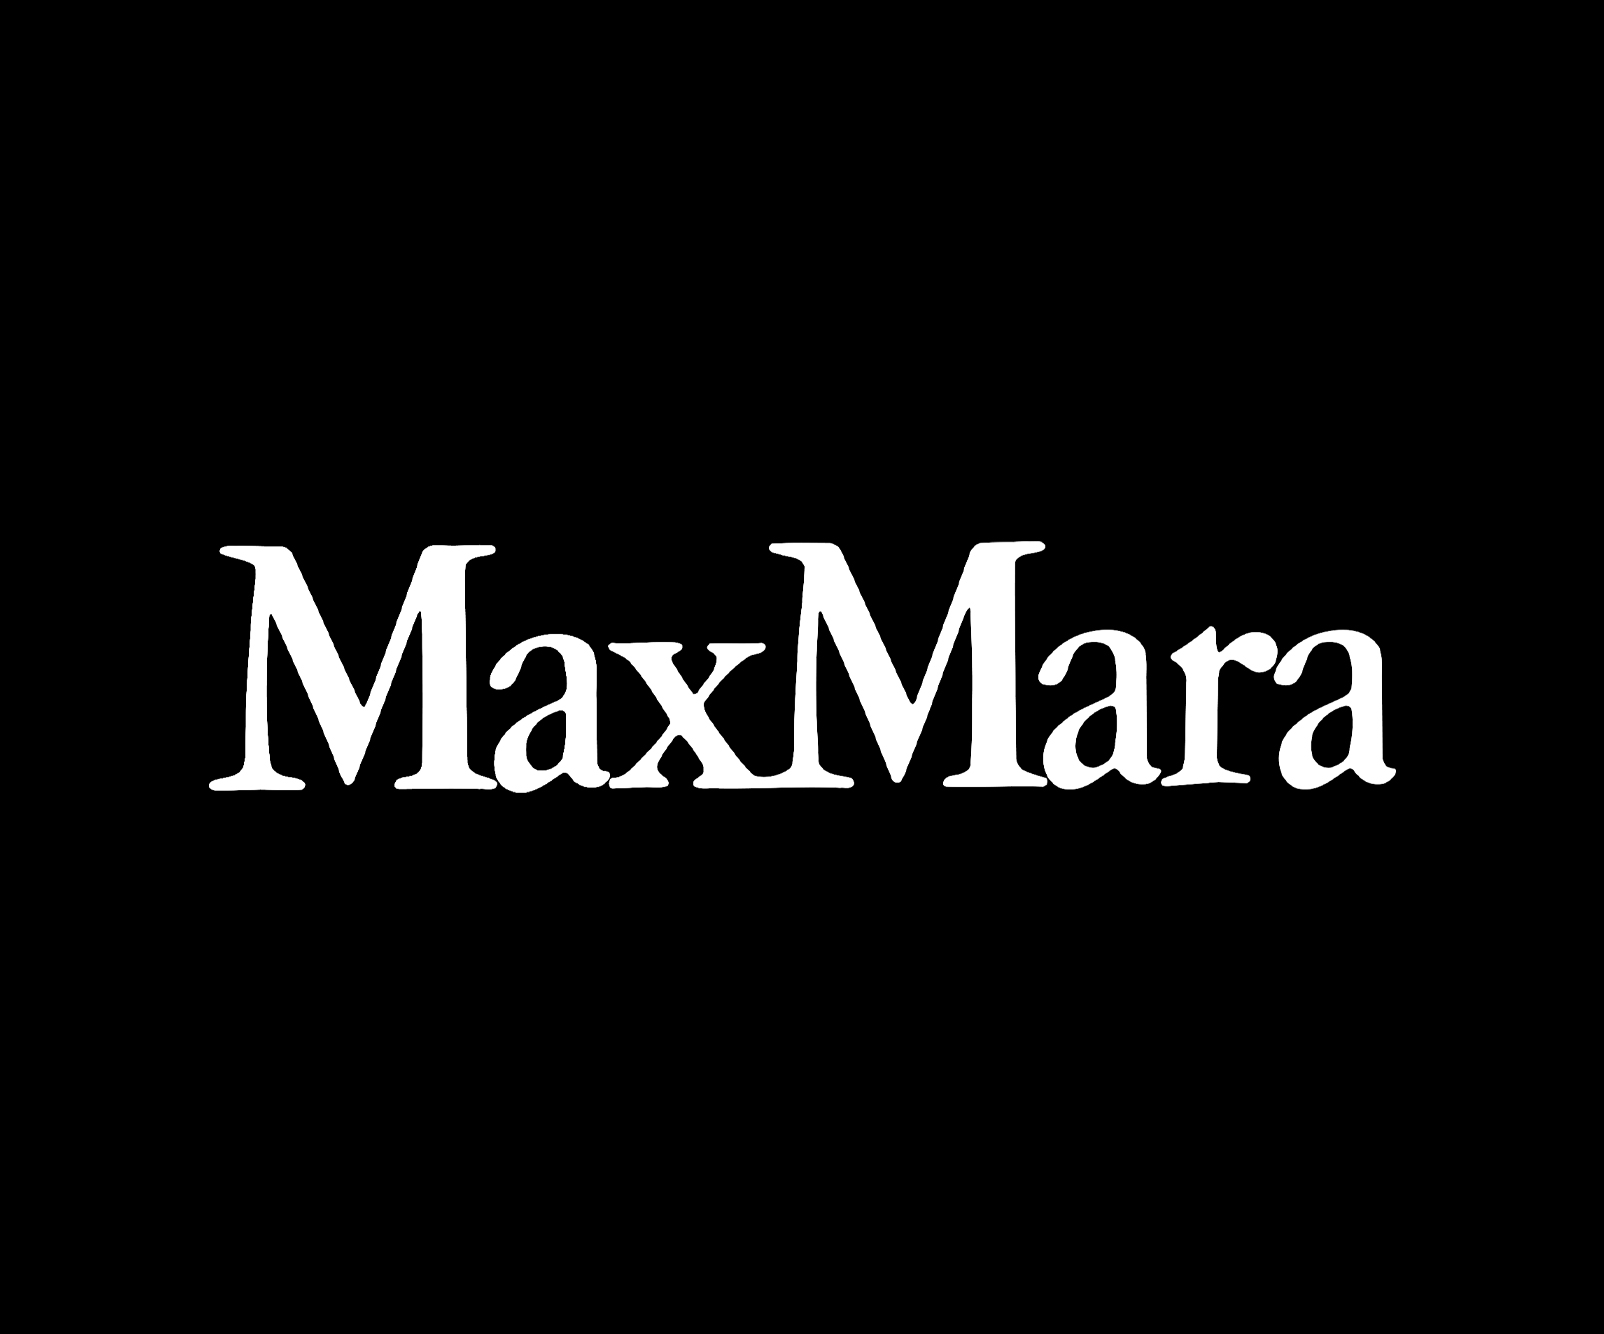 Max Mara Suisse